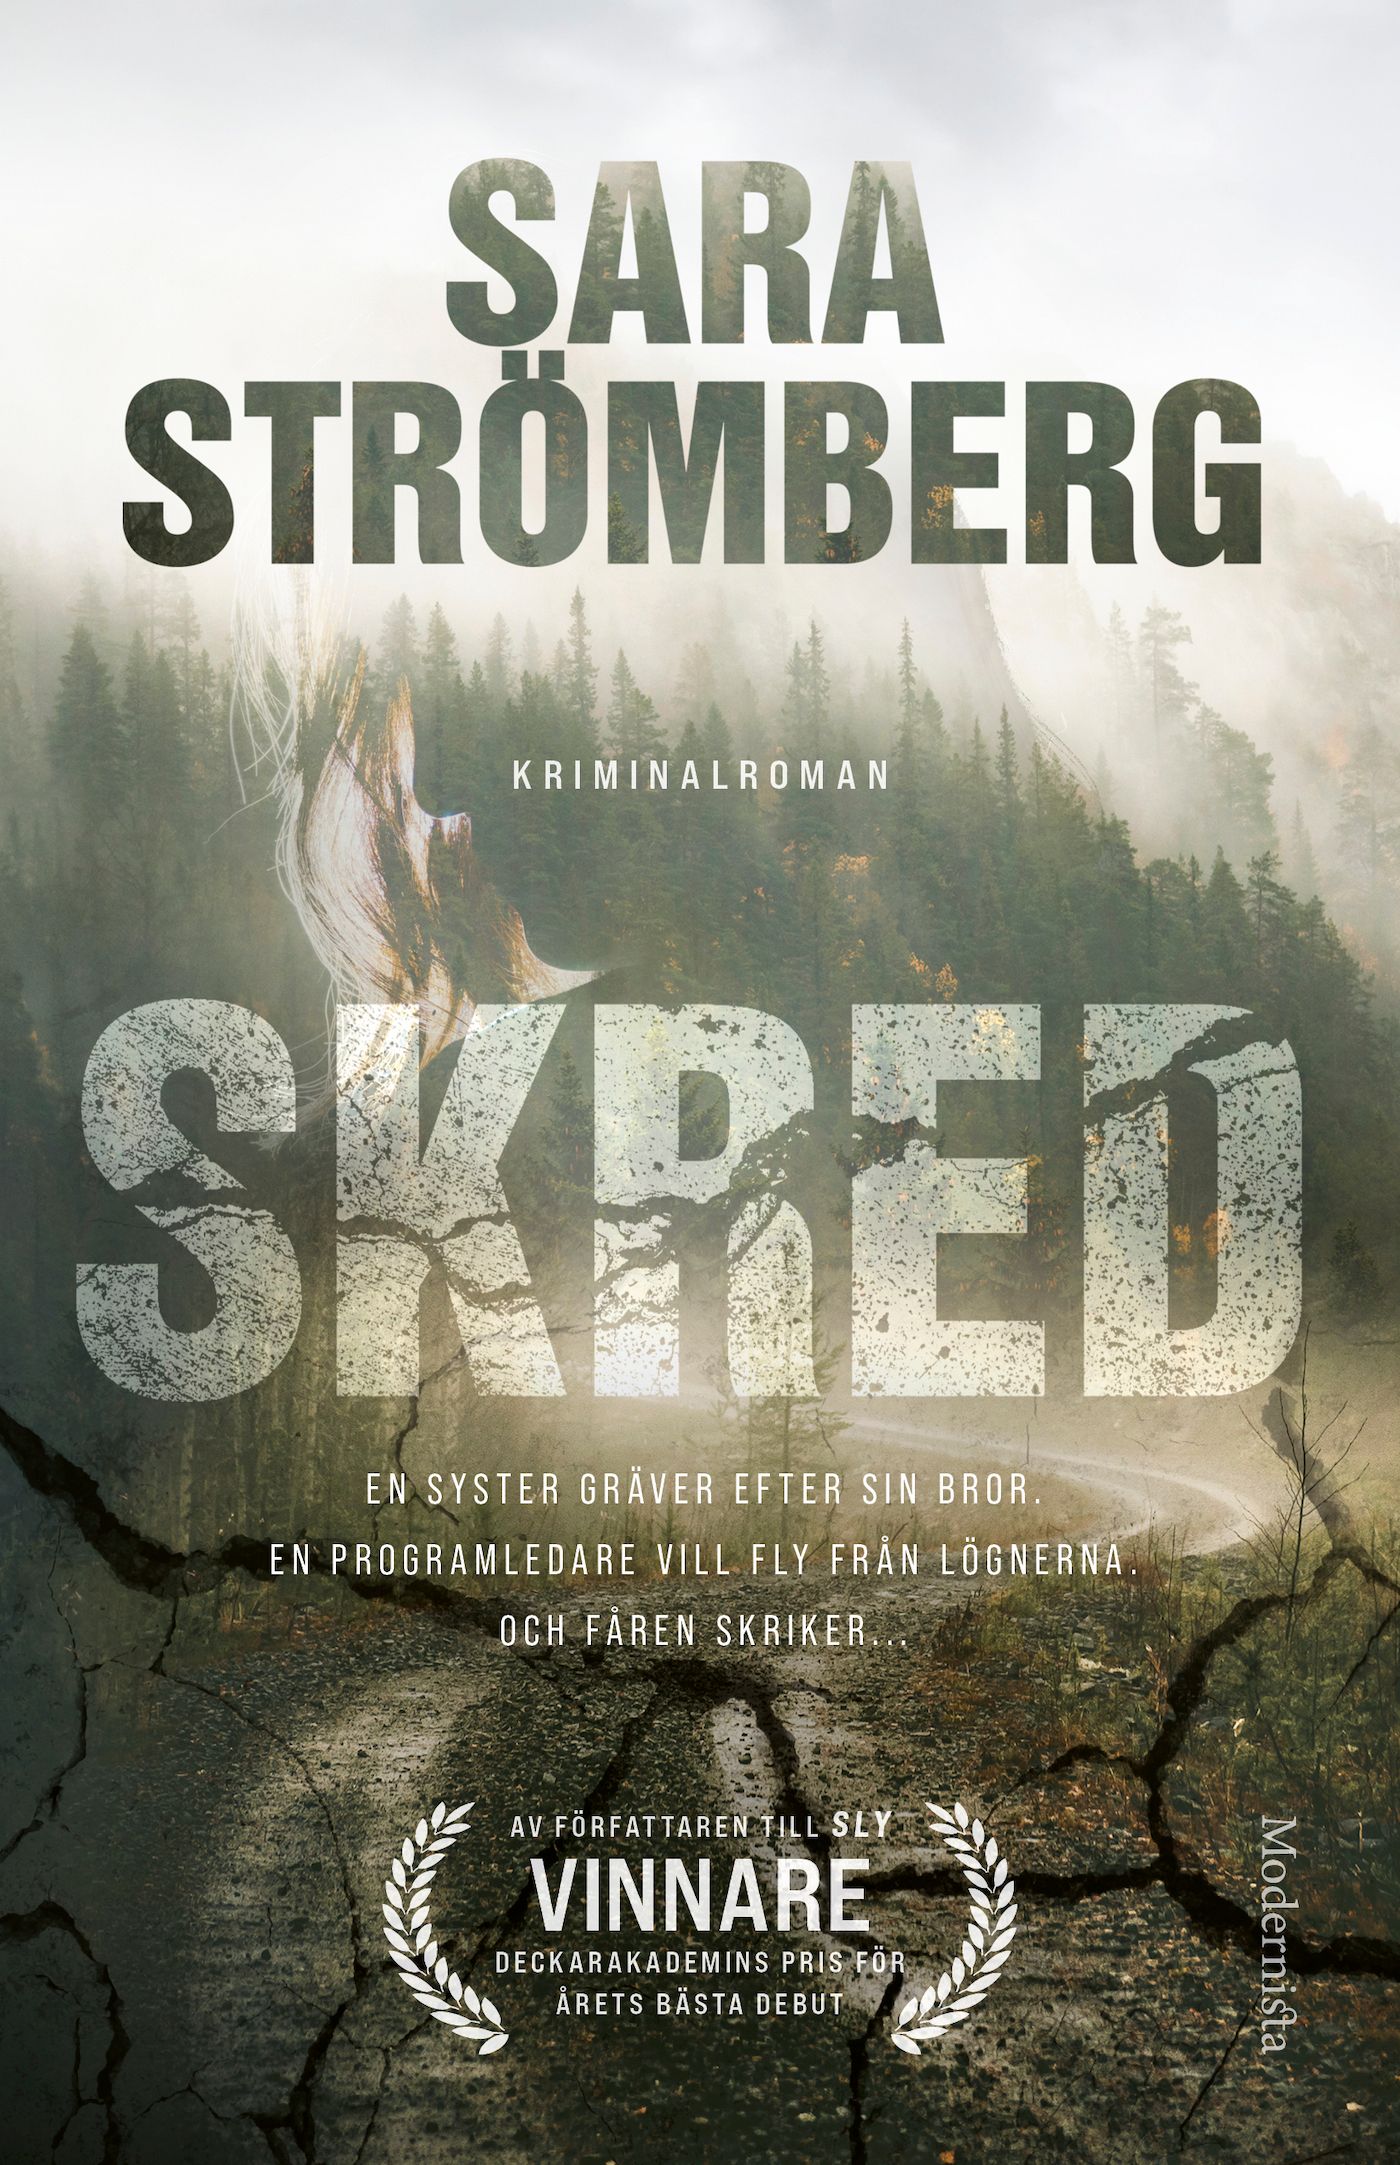 Skred, e-bok av Sara Strömberg